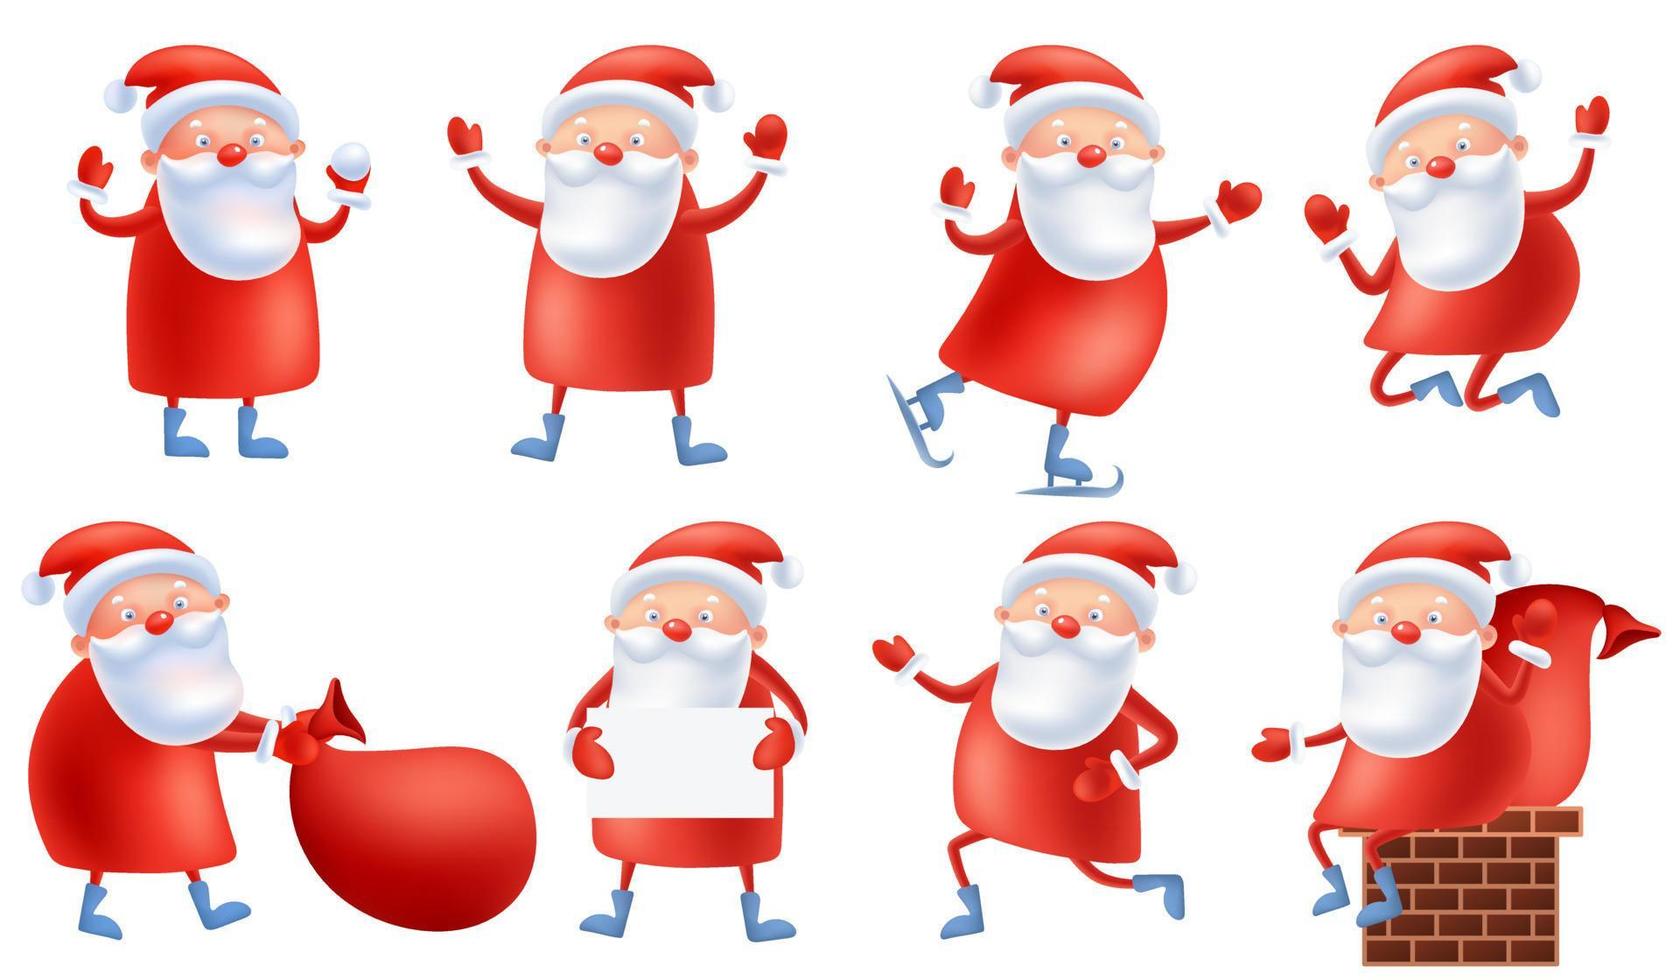 grappig schattig tekenfilm de kerstman claus met groot zak met presenteert, in verschillend poseert, rennen, springen, Holding spandoek. ansichtkaart vrolijk Kerstmis en gelukkig nieuw jaar. vrolijk Kerstmis vector illustratie.